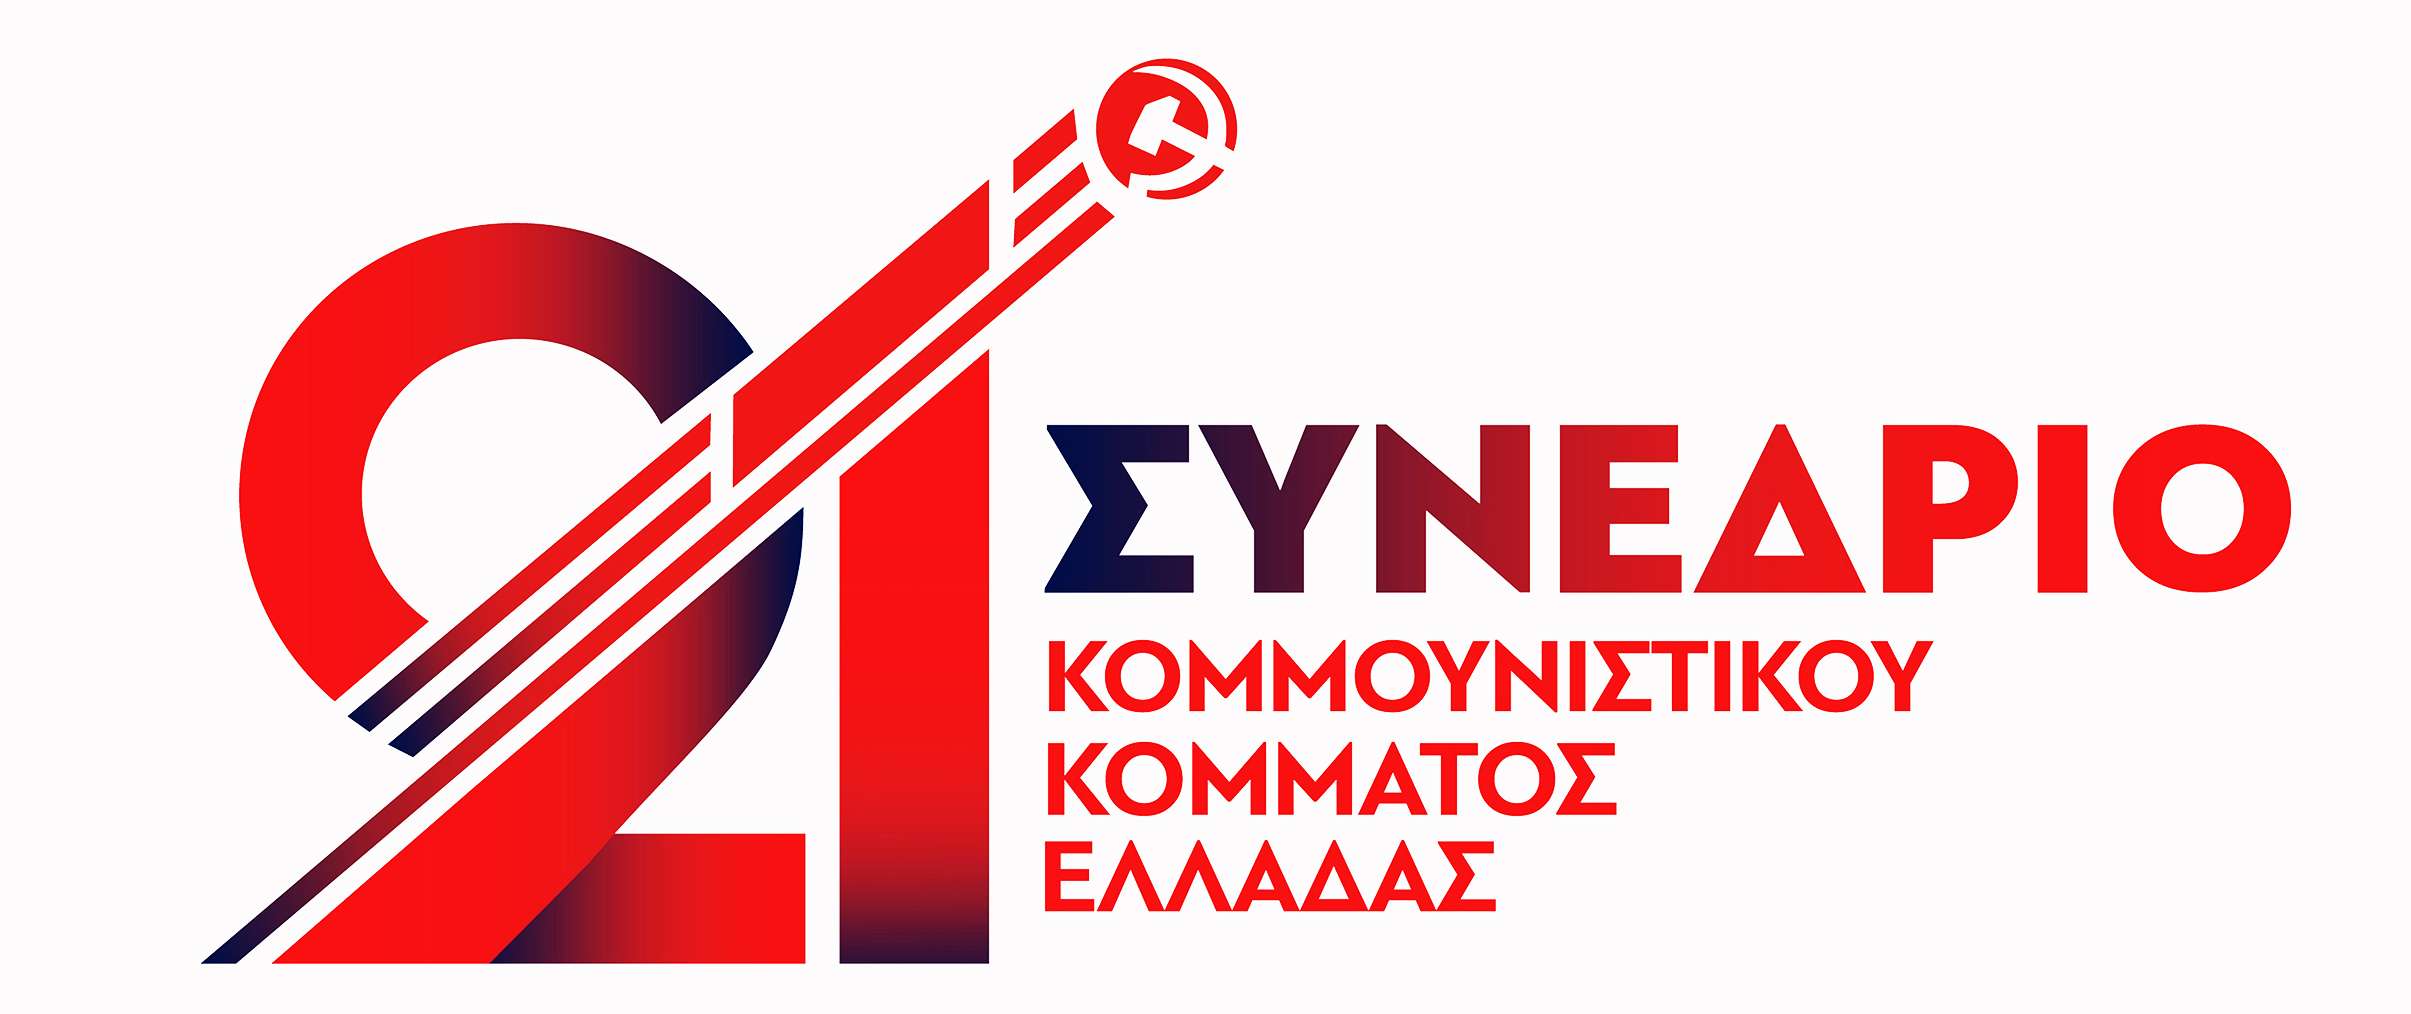 21ο Συνέδριο ΚΚΕ logo